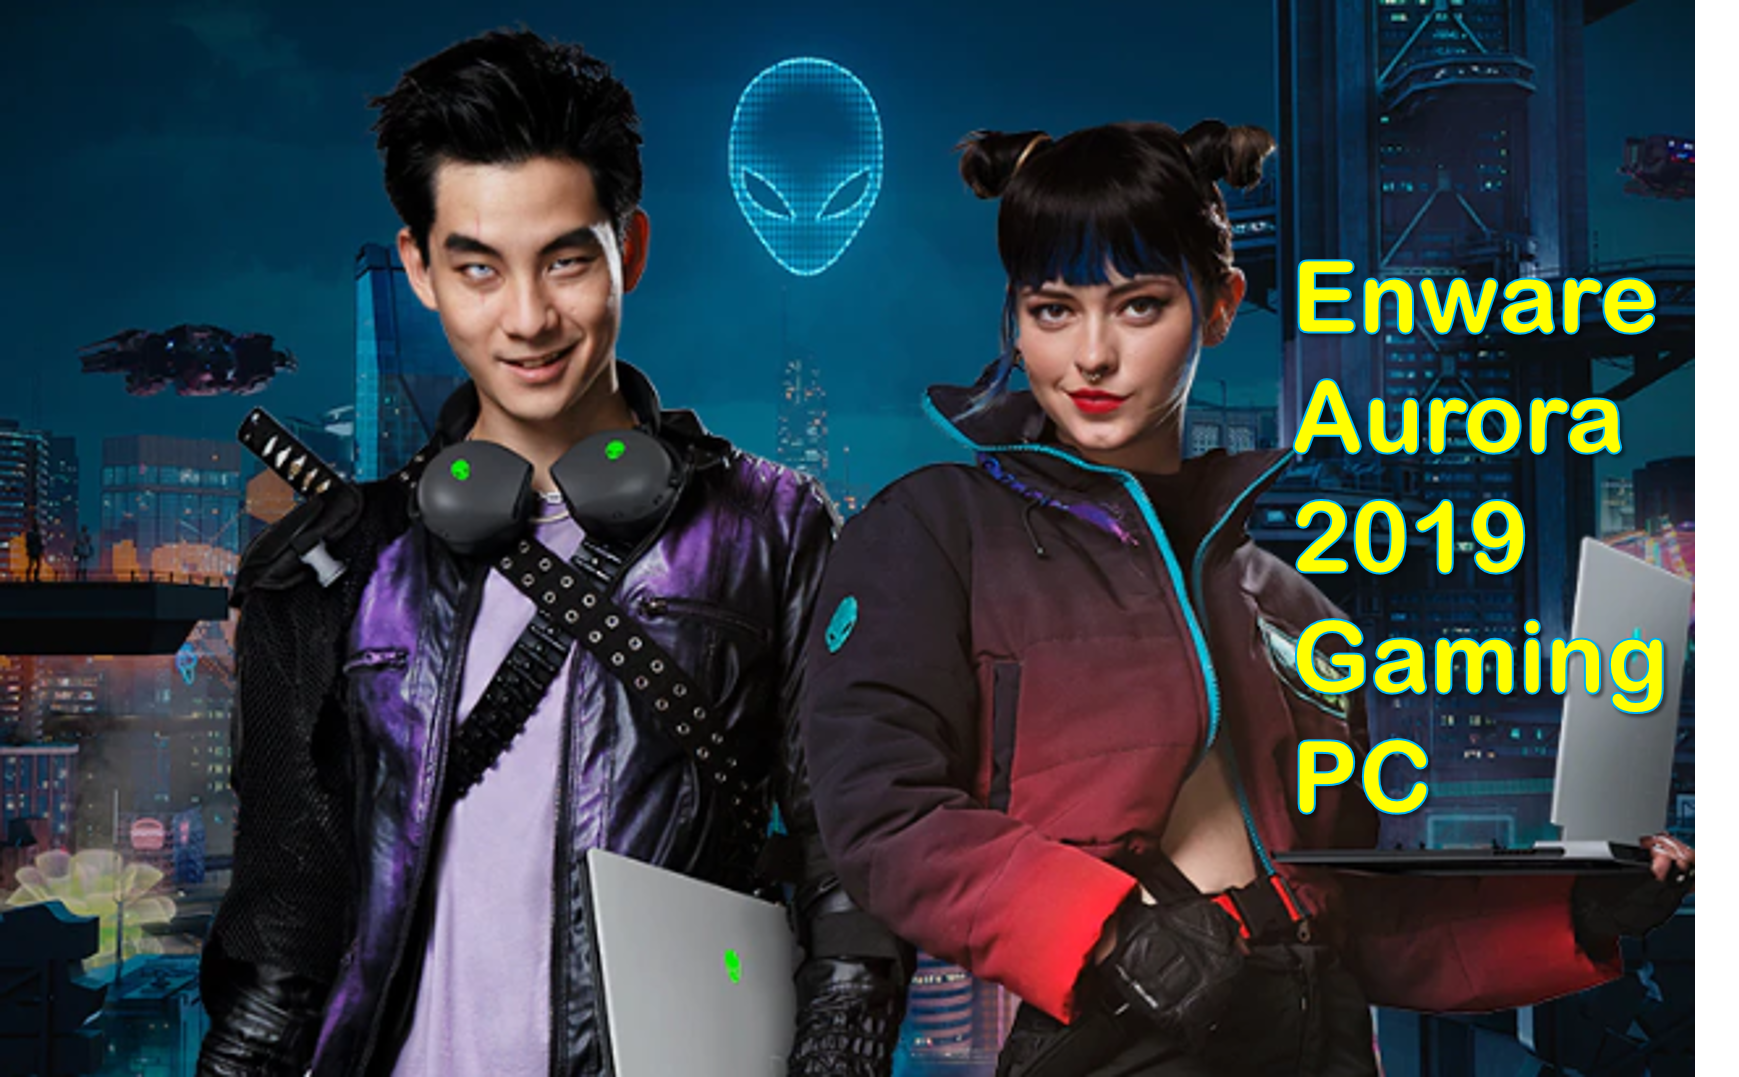 Enware Aurora 2019 Gaming PC